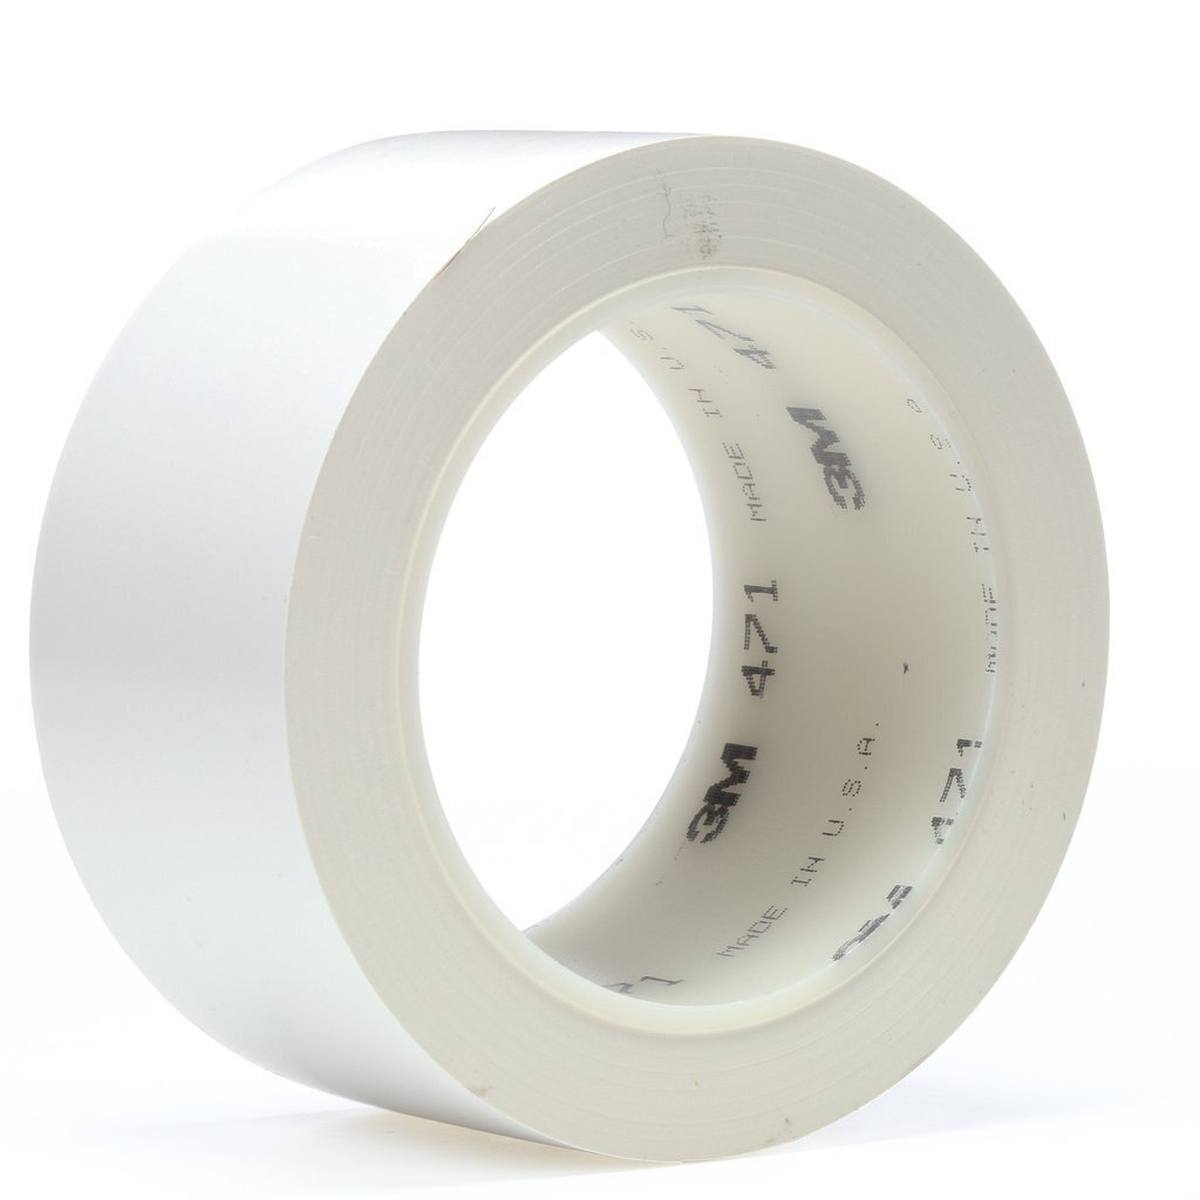 Nastro adesivo 3M in PVC morbido 471 F, bianco, 50 mm x 33 m, 0,13 mm